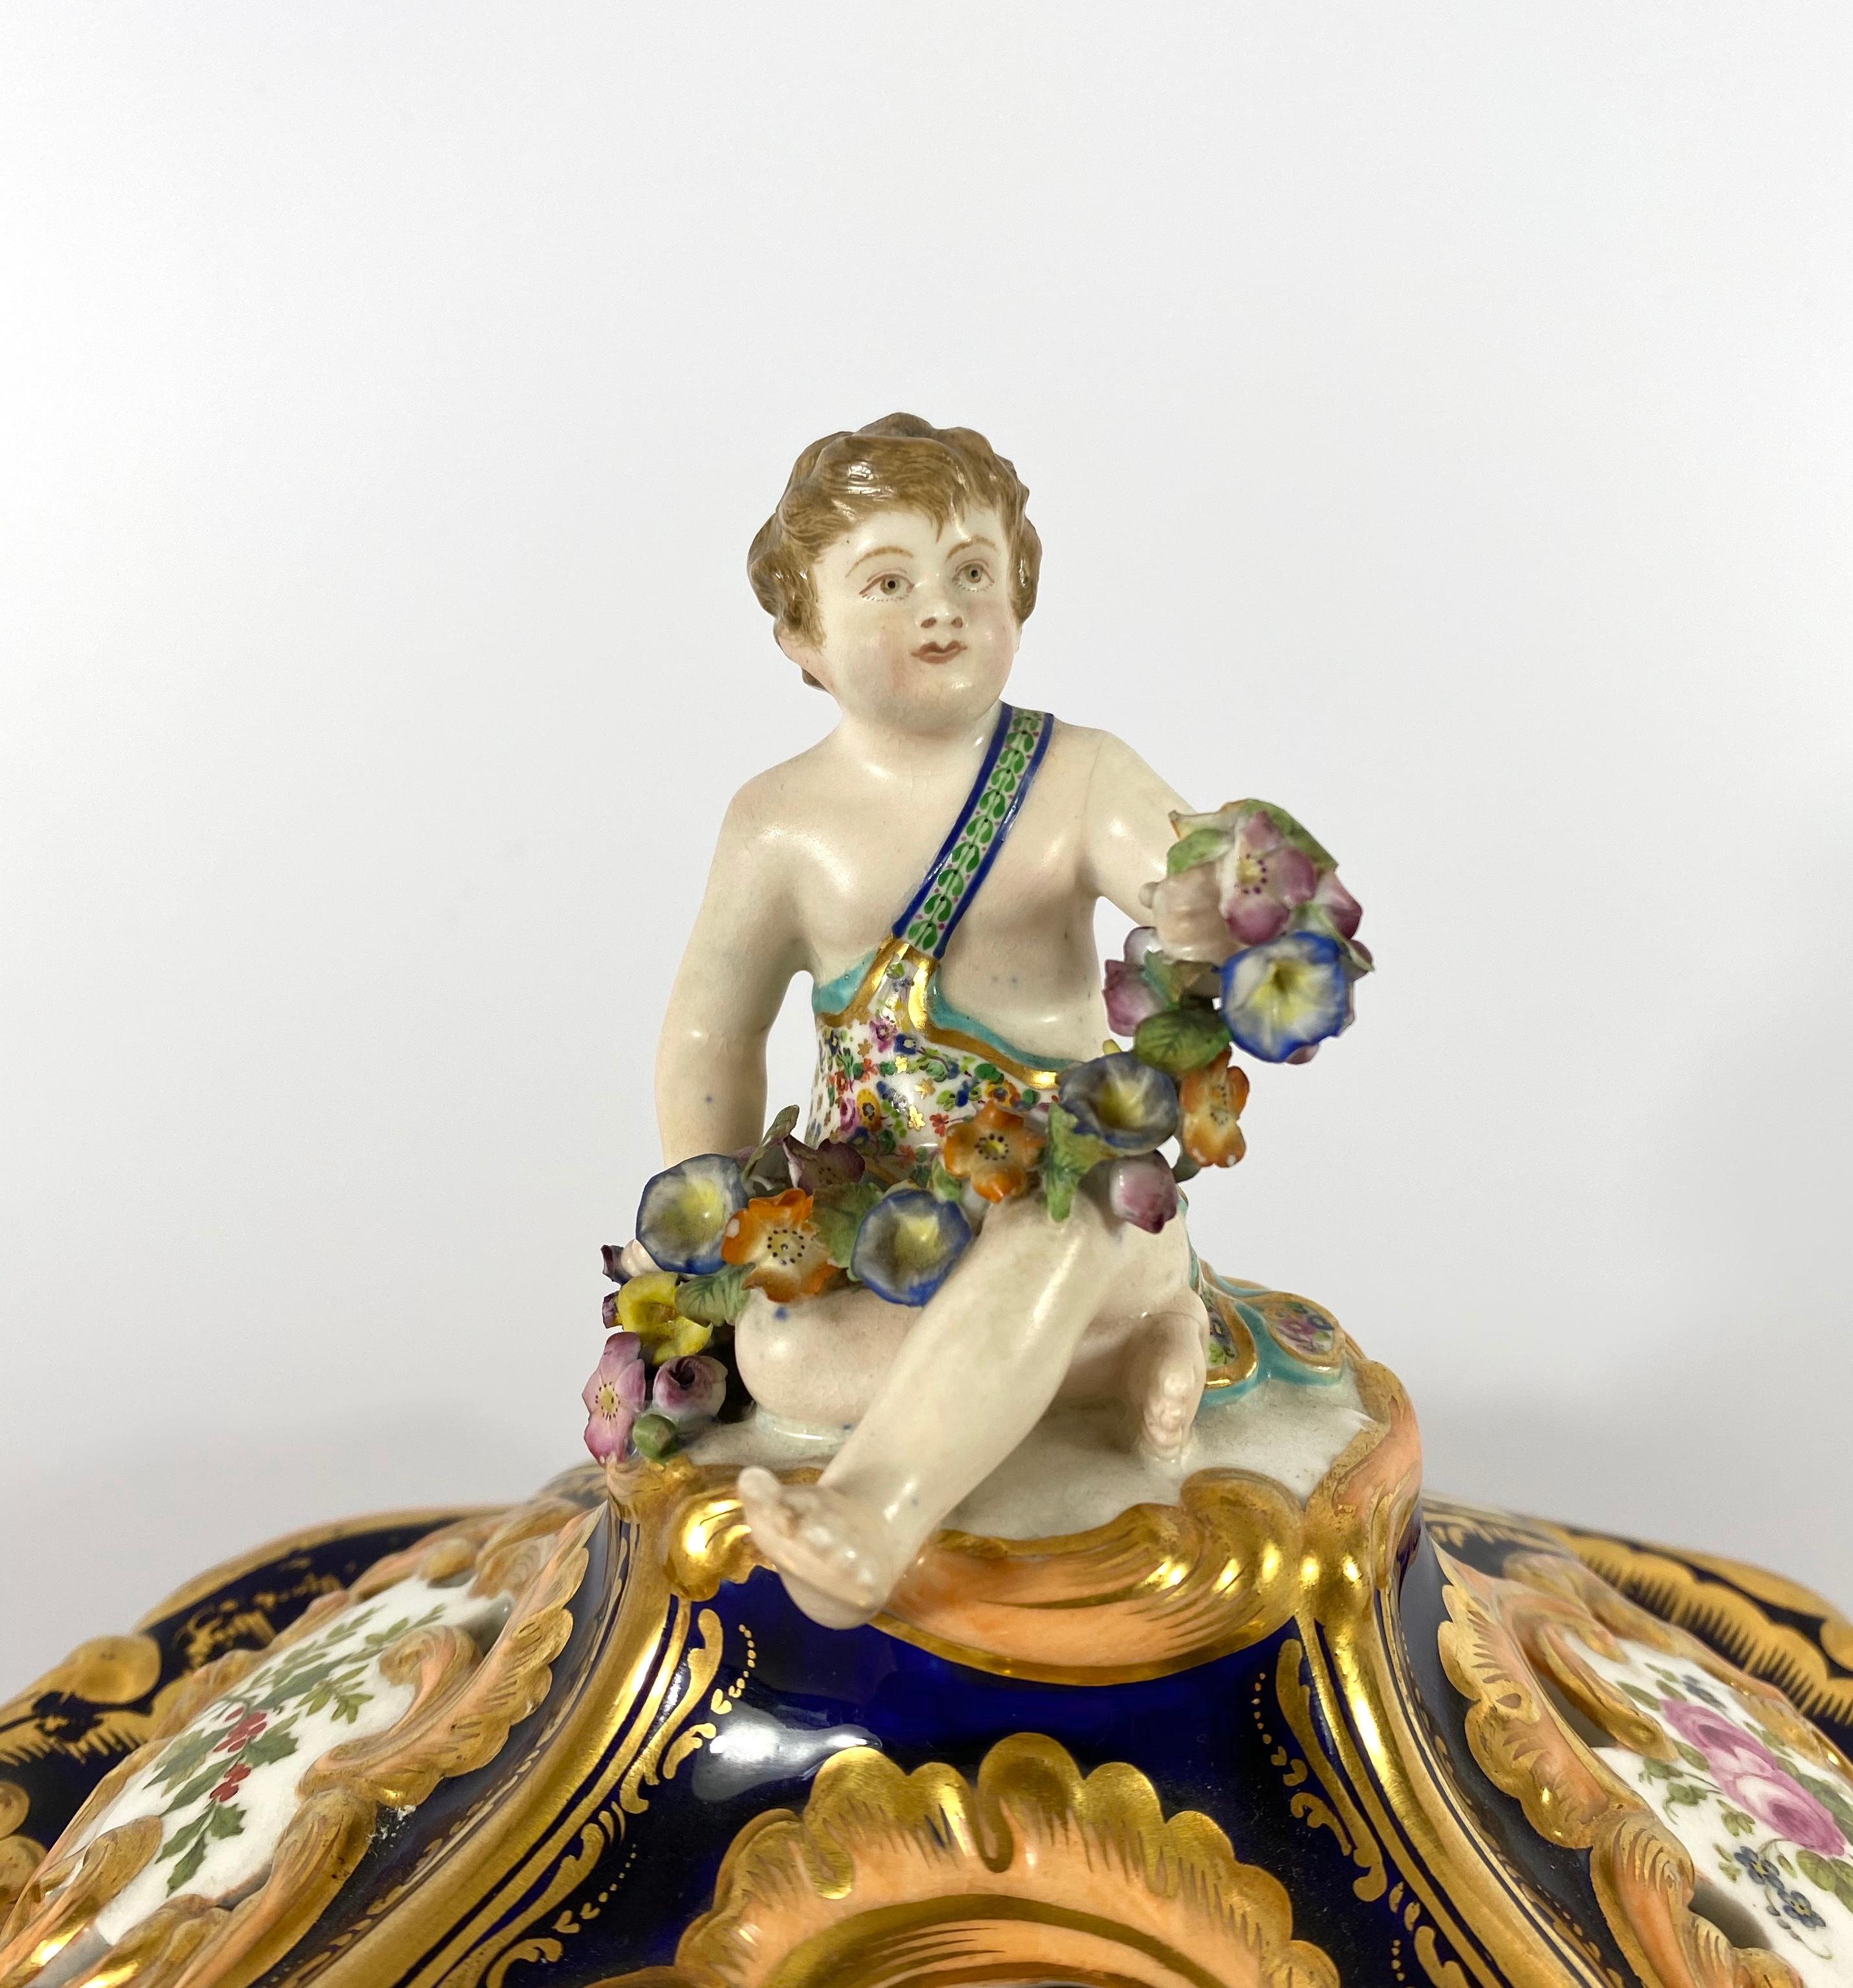 Fine pair Minton porcelain vases & covers, ‘Four Seasons’ c. 1830. 11